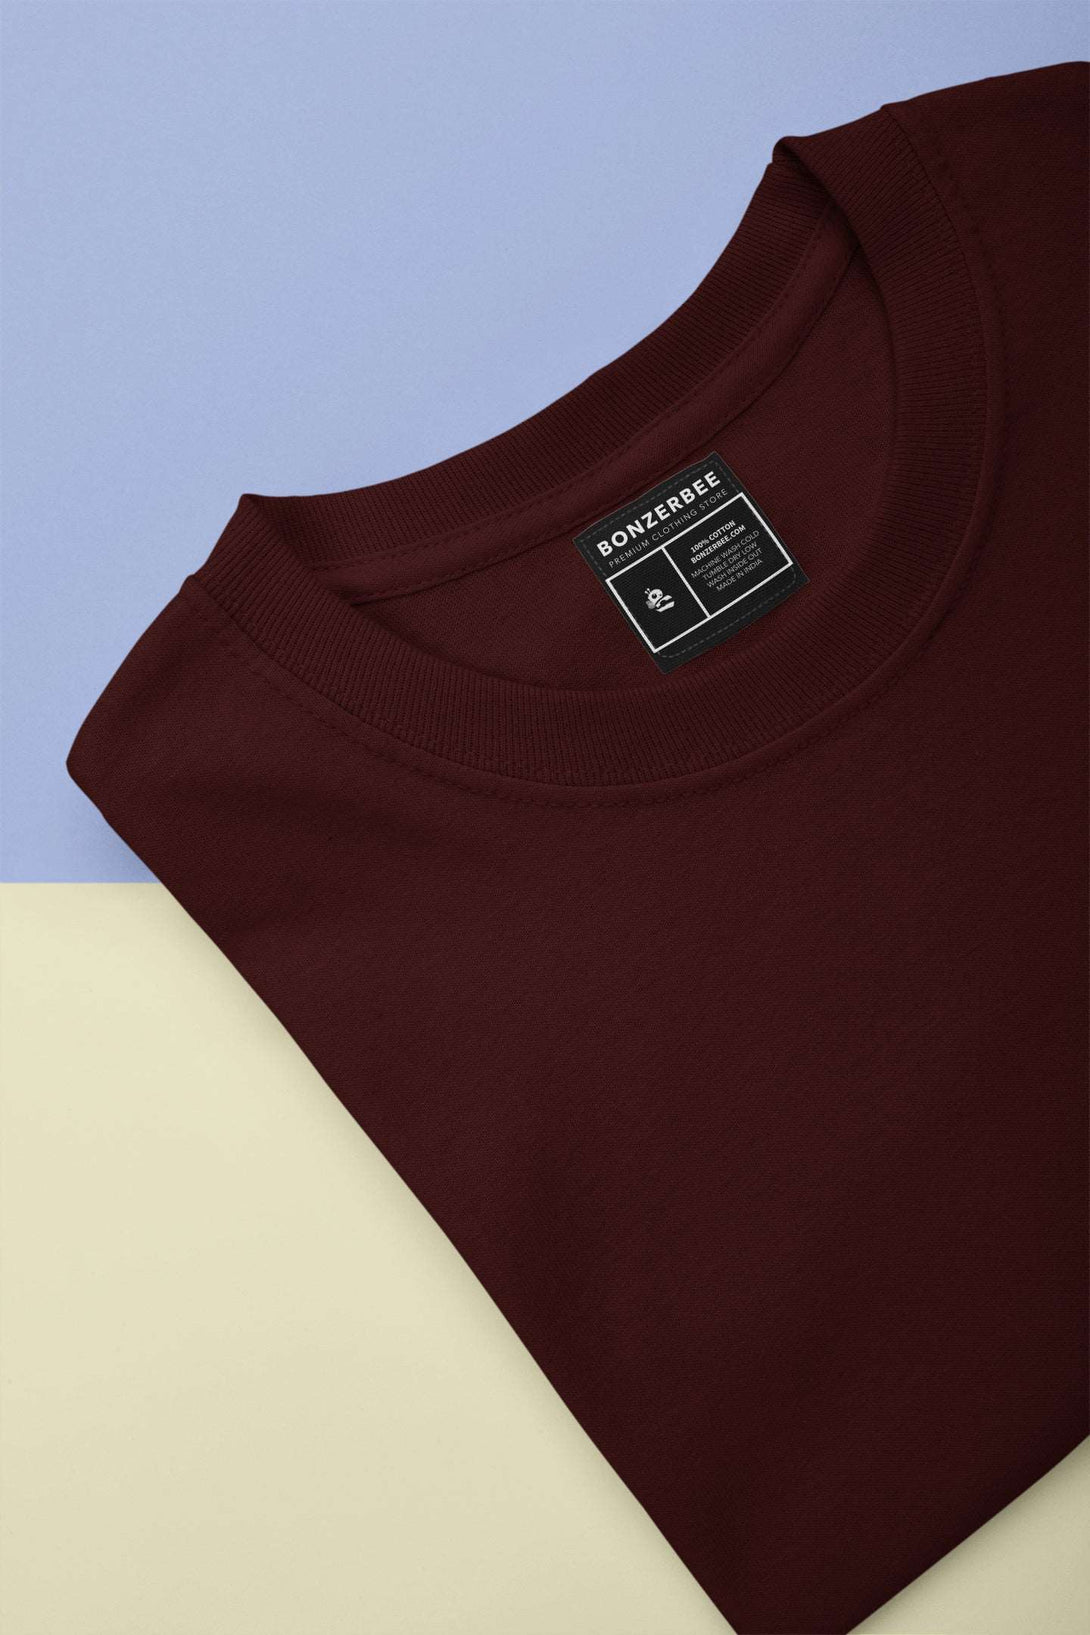 Maroon Half Sleeve T-shirt